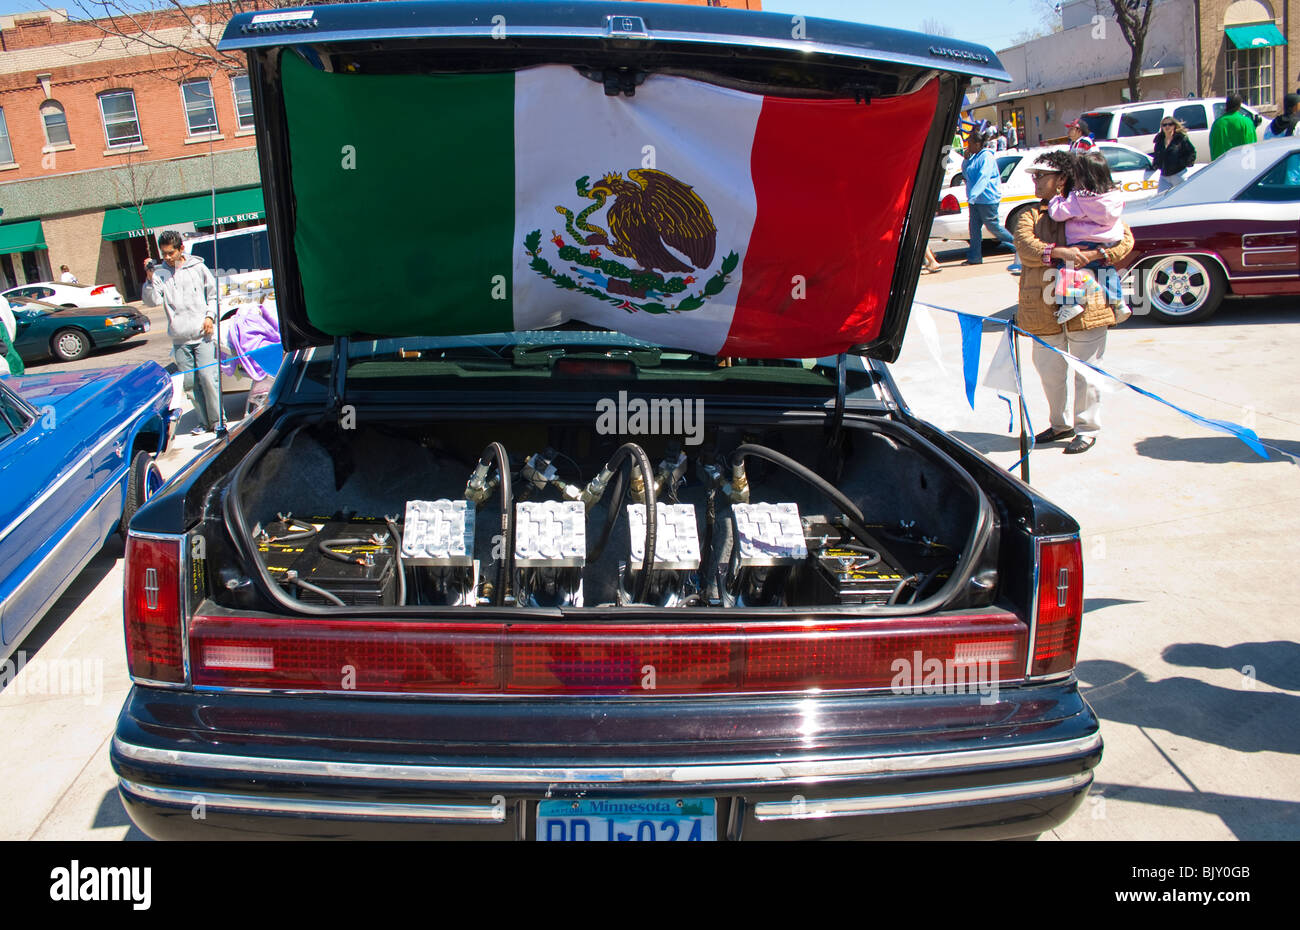 Kofferraum maßgeschneiderte Lowrider mit dem Aufzug Hydraulik und der  mexikanischen Flagge. Cinco De Mayo Fiesta St Paul Minnesota USA  Stockfotografie - Alamy